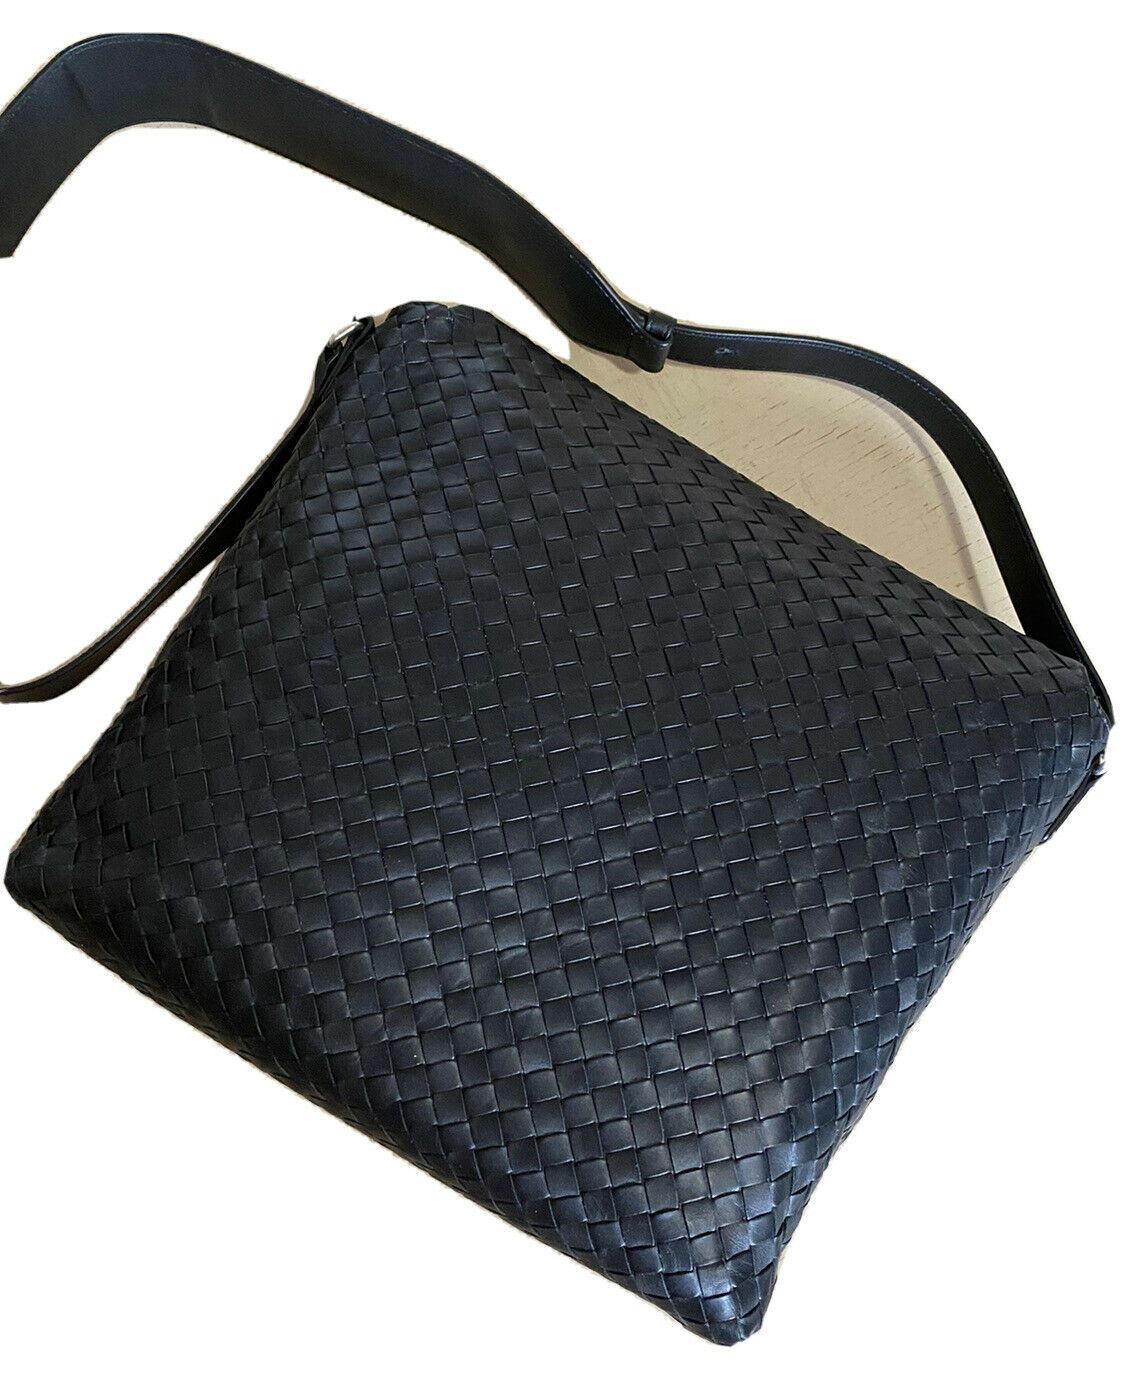 New $3000 Bottega Veneta Leather Messenger Shoulder Bag Black 577538 Italy